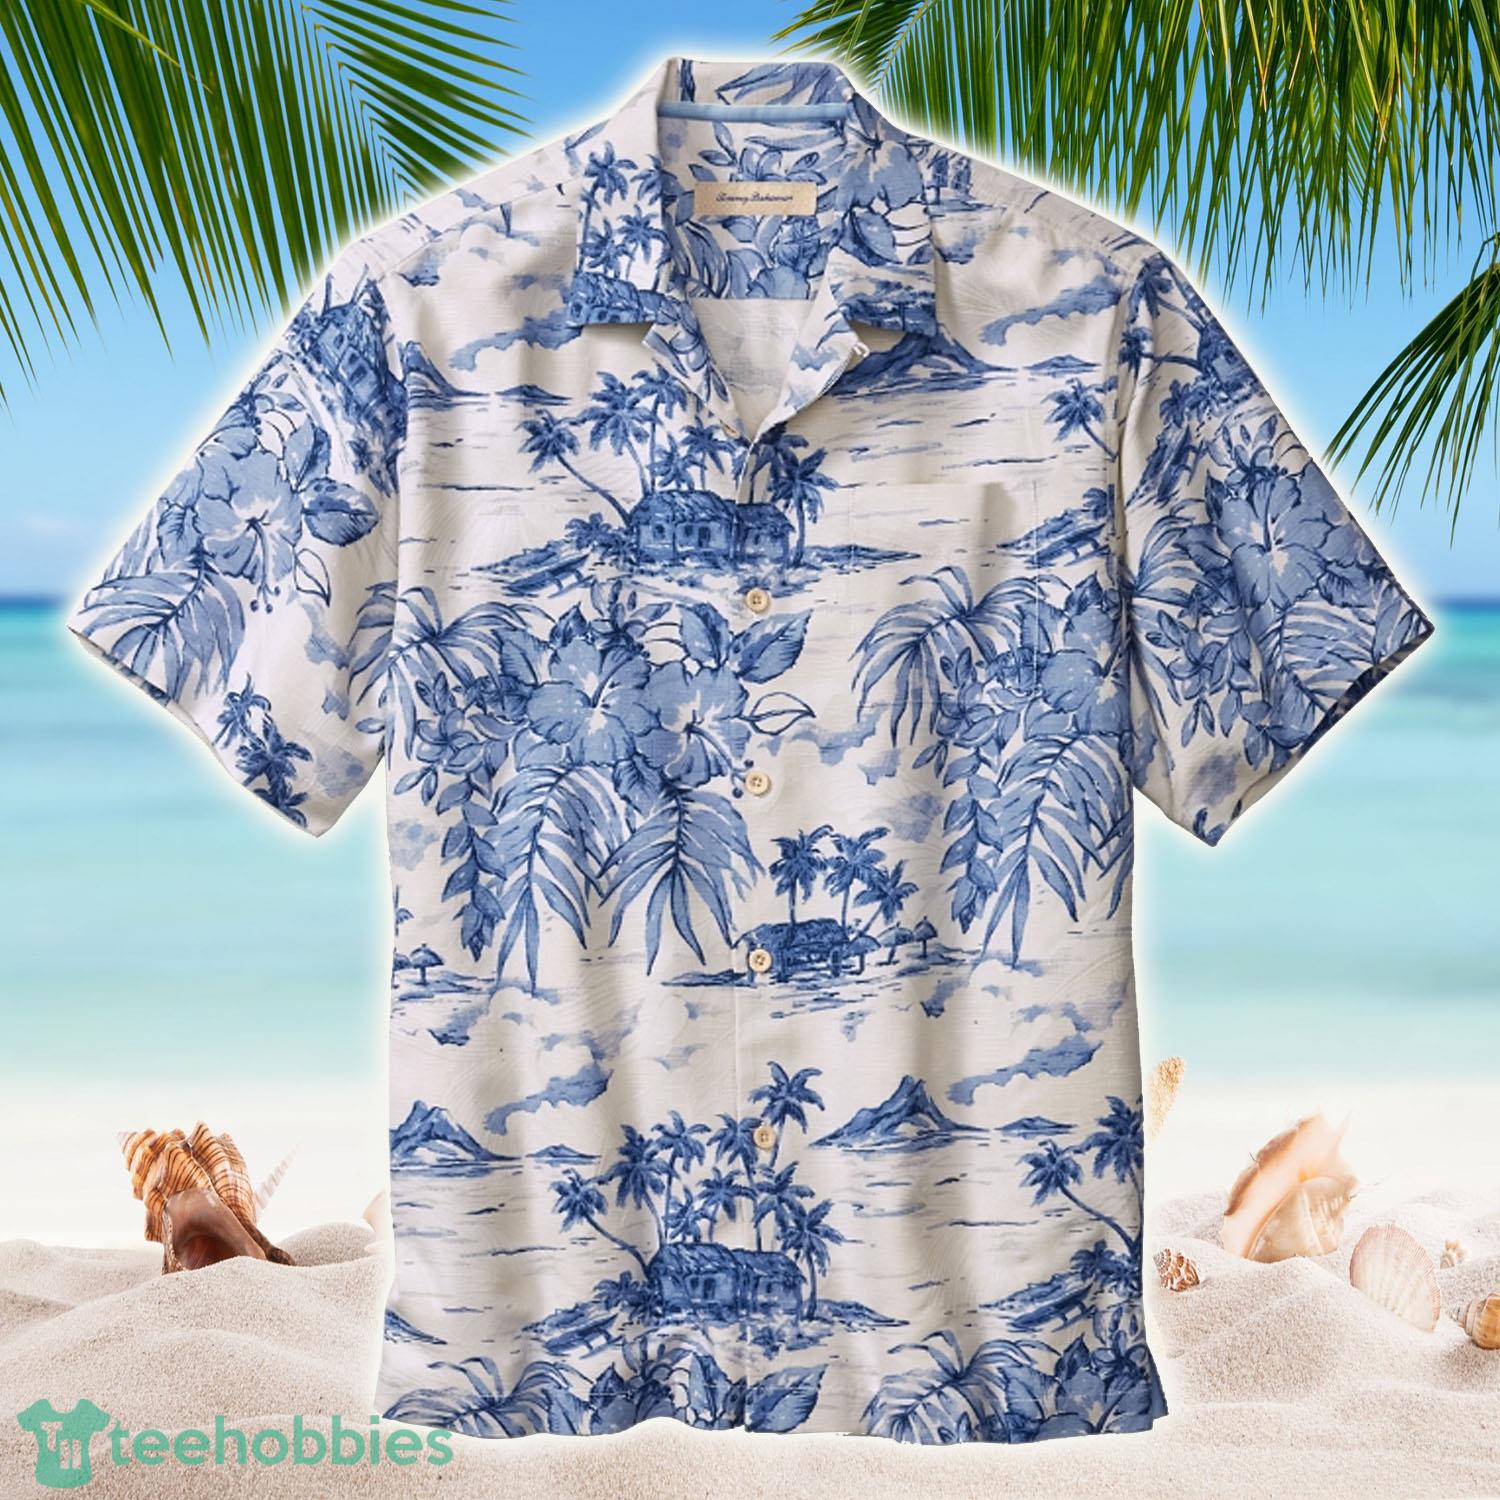 Tommy Bahama Summer Hawaii Shirts